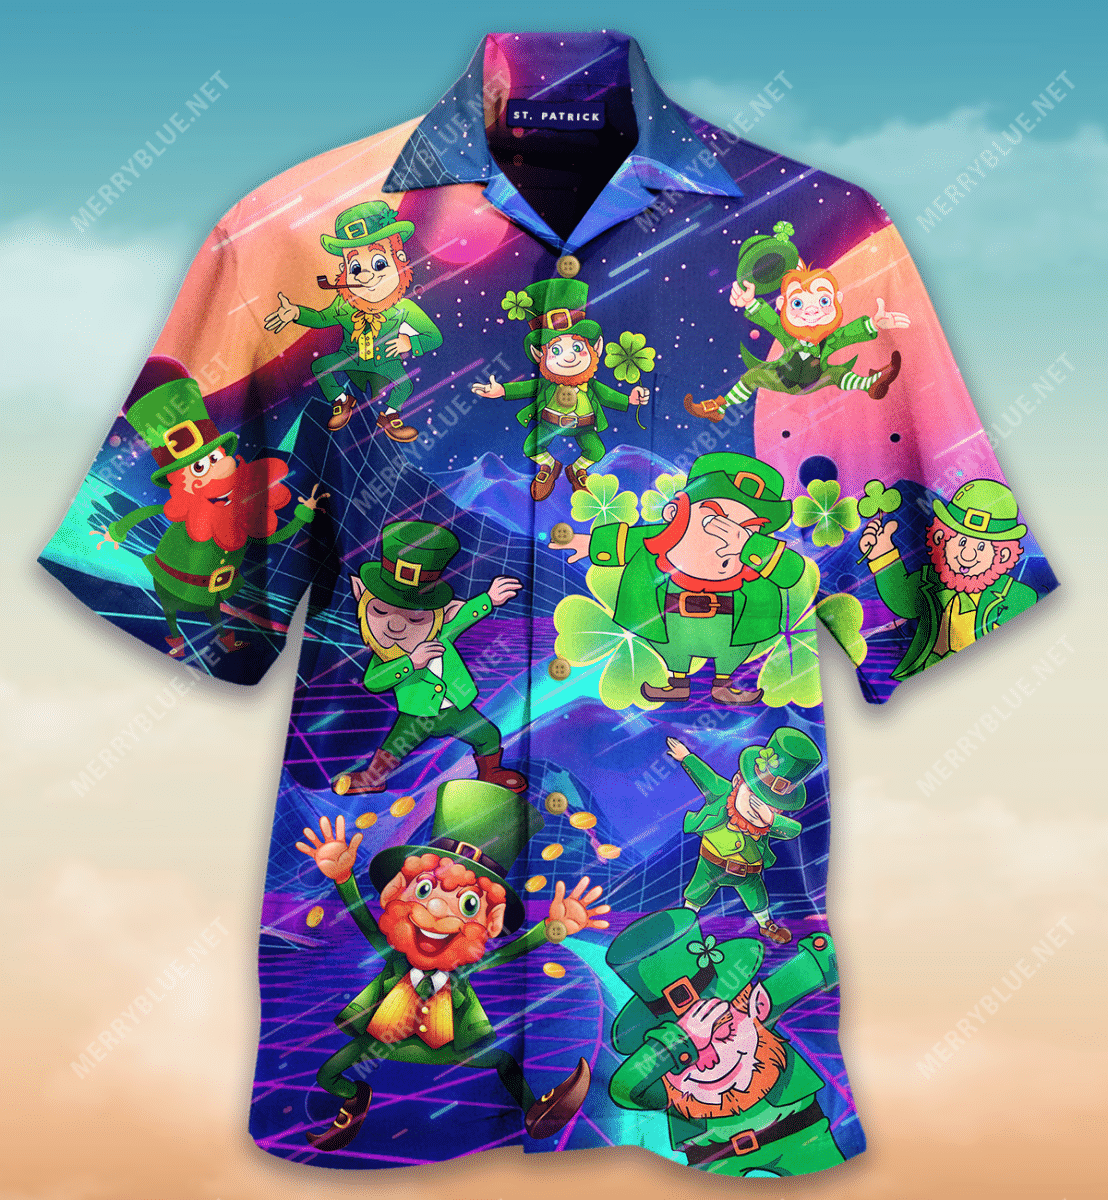 Saint Patrick’s Day Dance Hawaiian Shirt